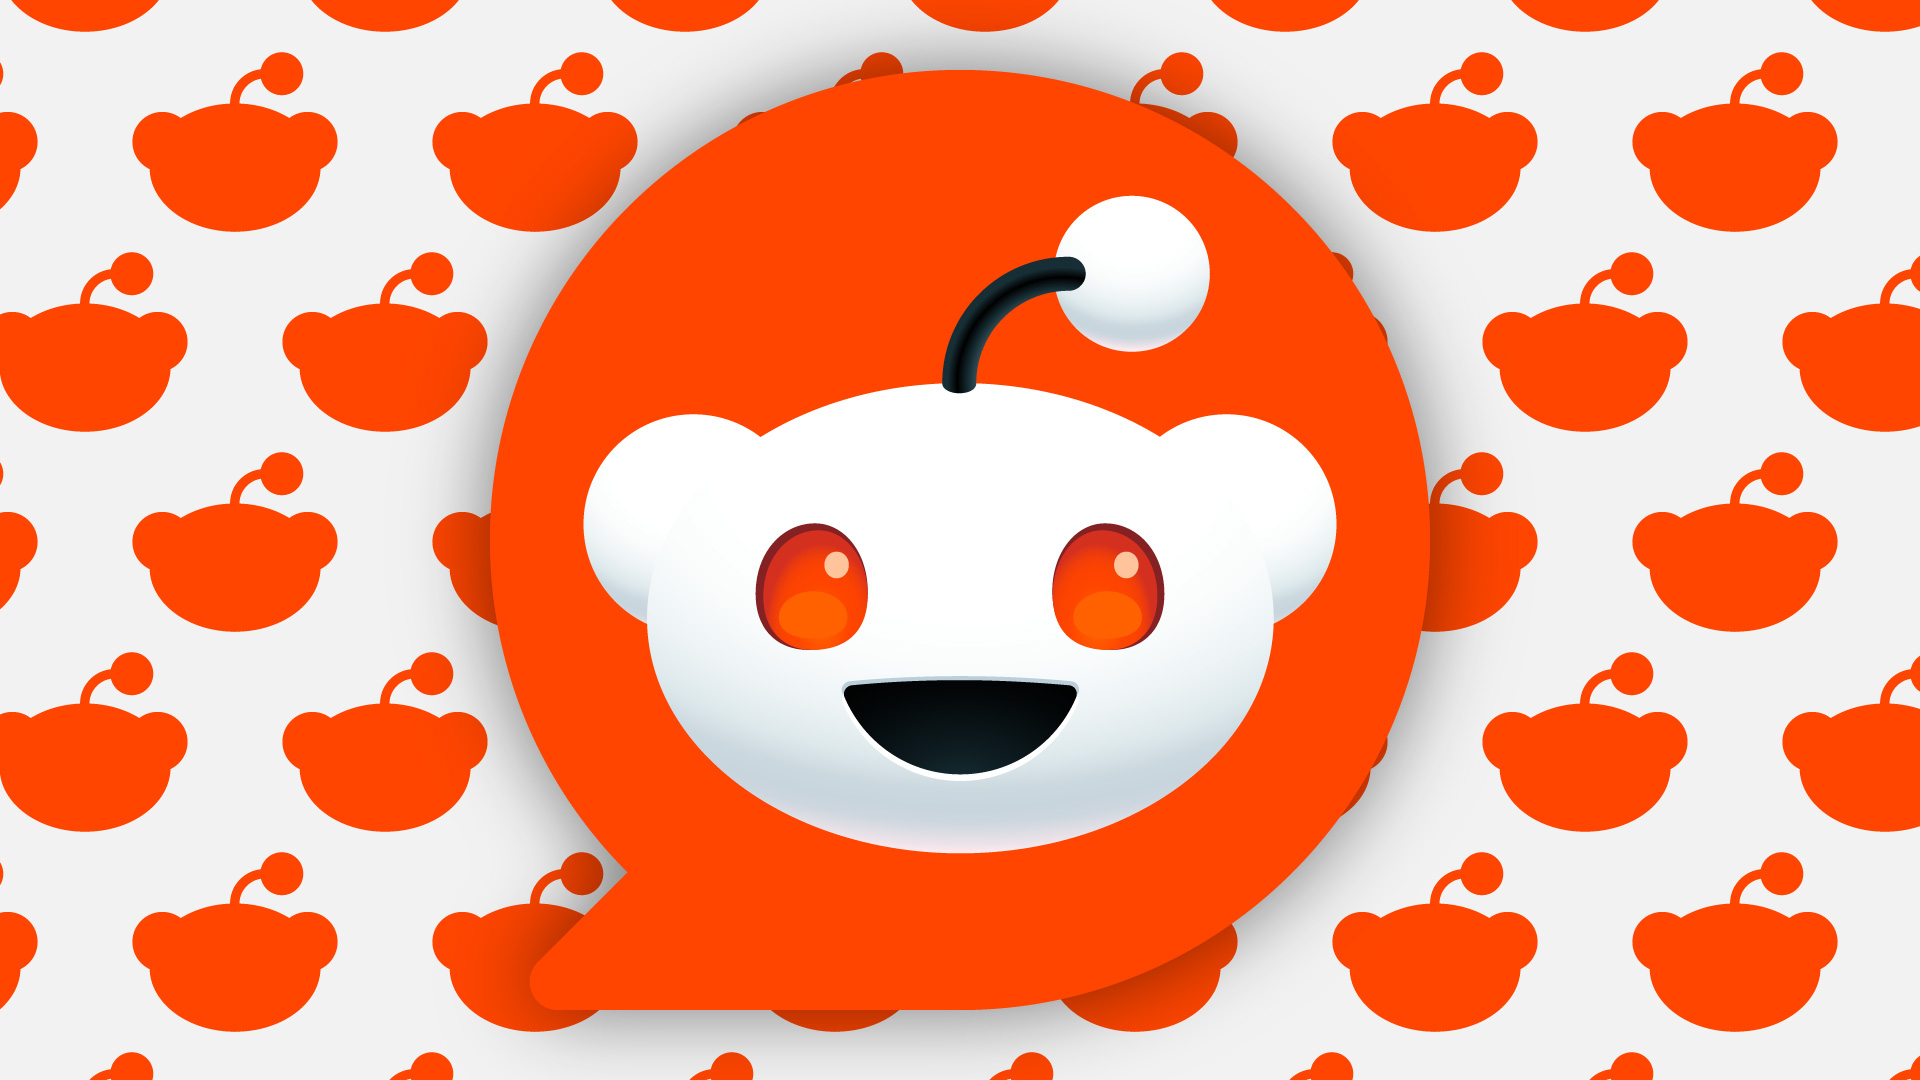 Logotipo de Reddit en un patrón de siluetas de logotipos